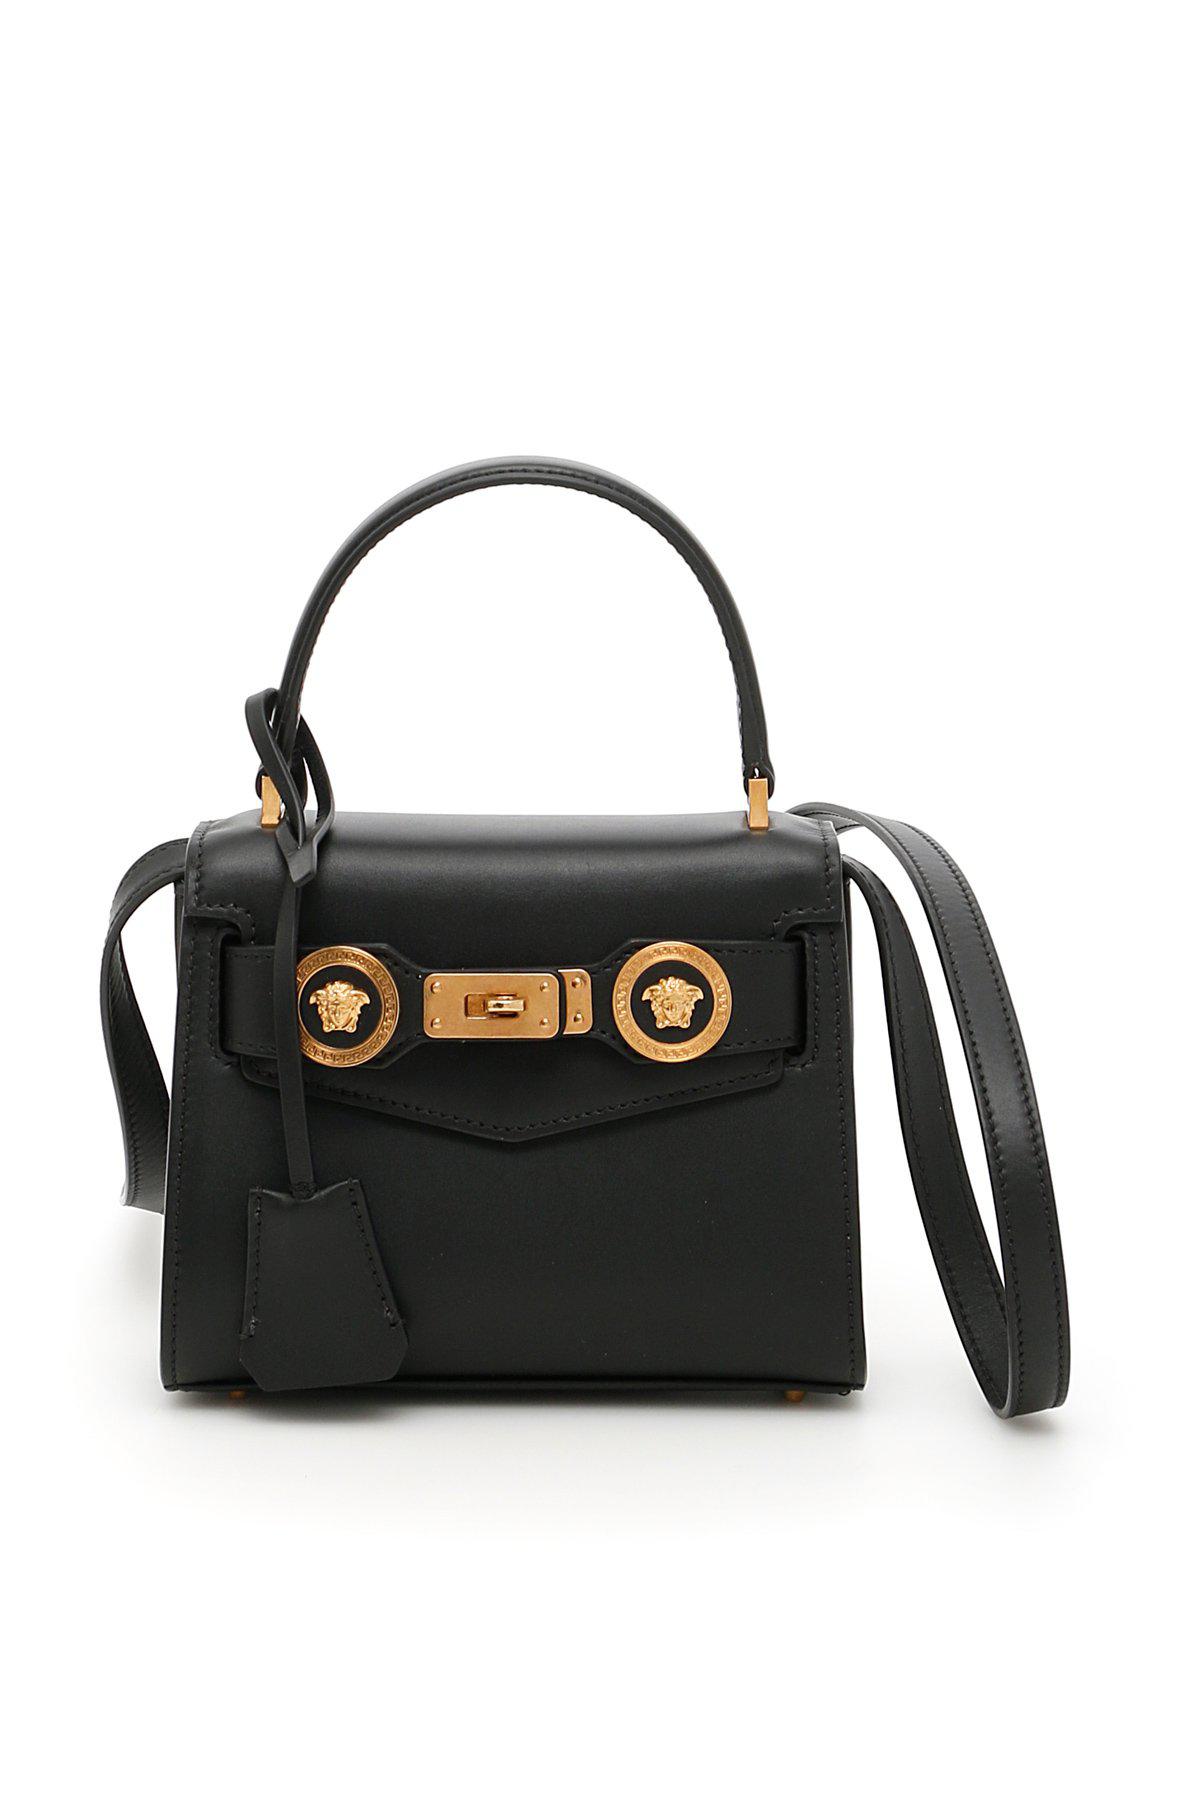 Versace Small Icon Handbag in Black | Lyst